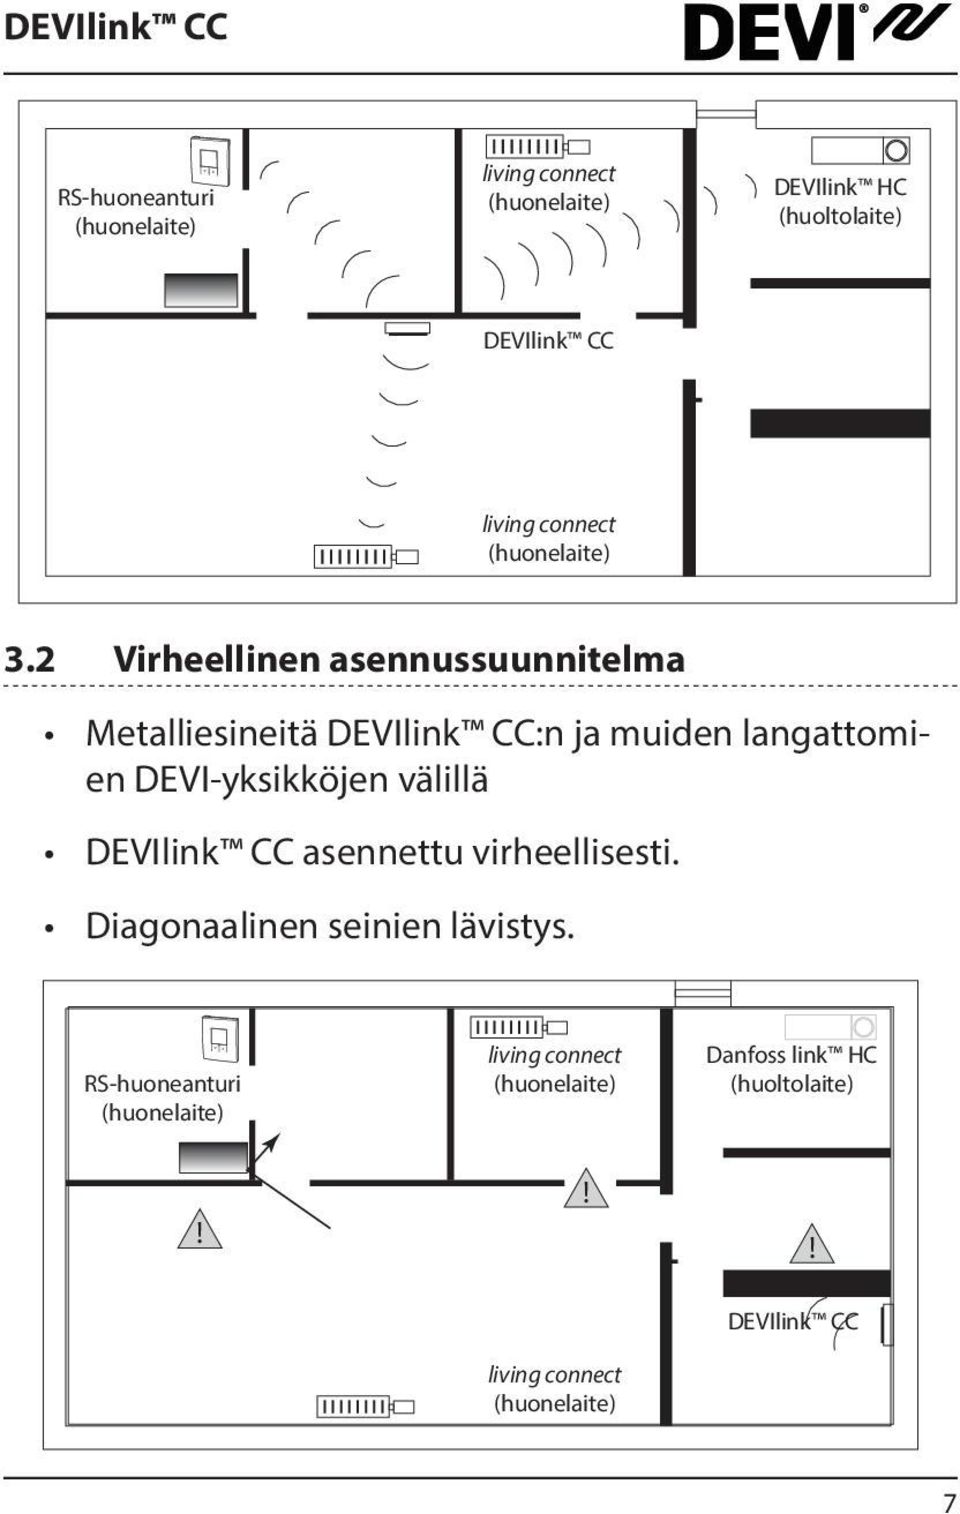 2 Virheellinen asennussuunnitelma Metalliesineitä DEVIlink CC:n ja muiden langattomien DEVI-yksikköjen